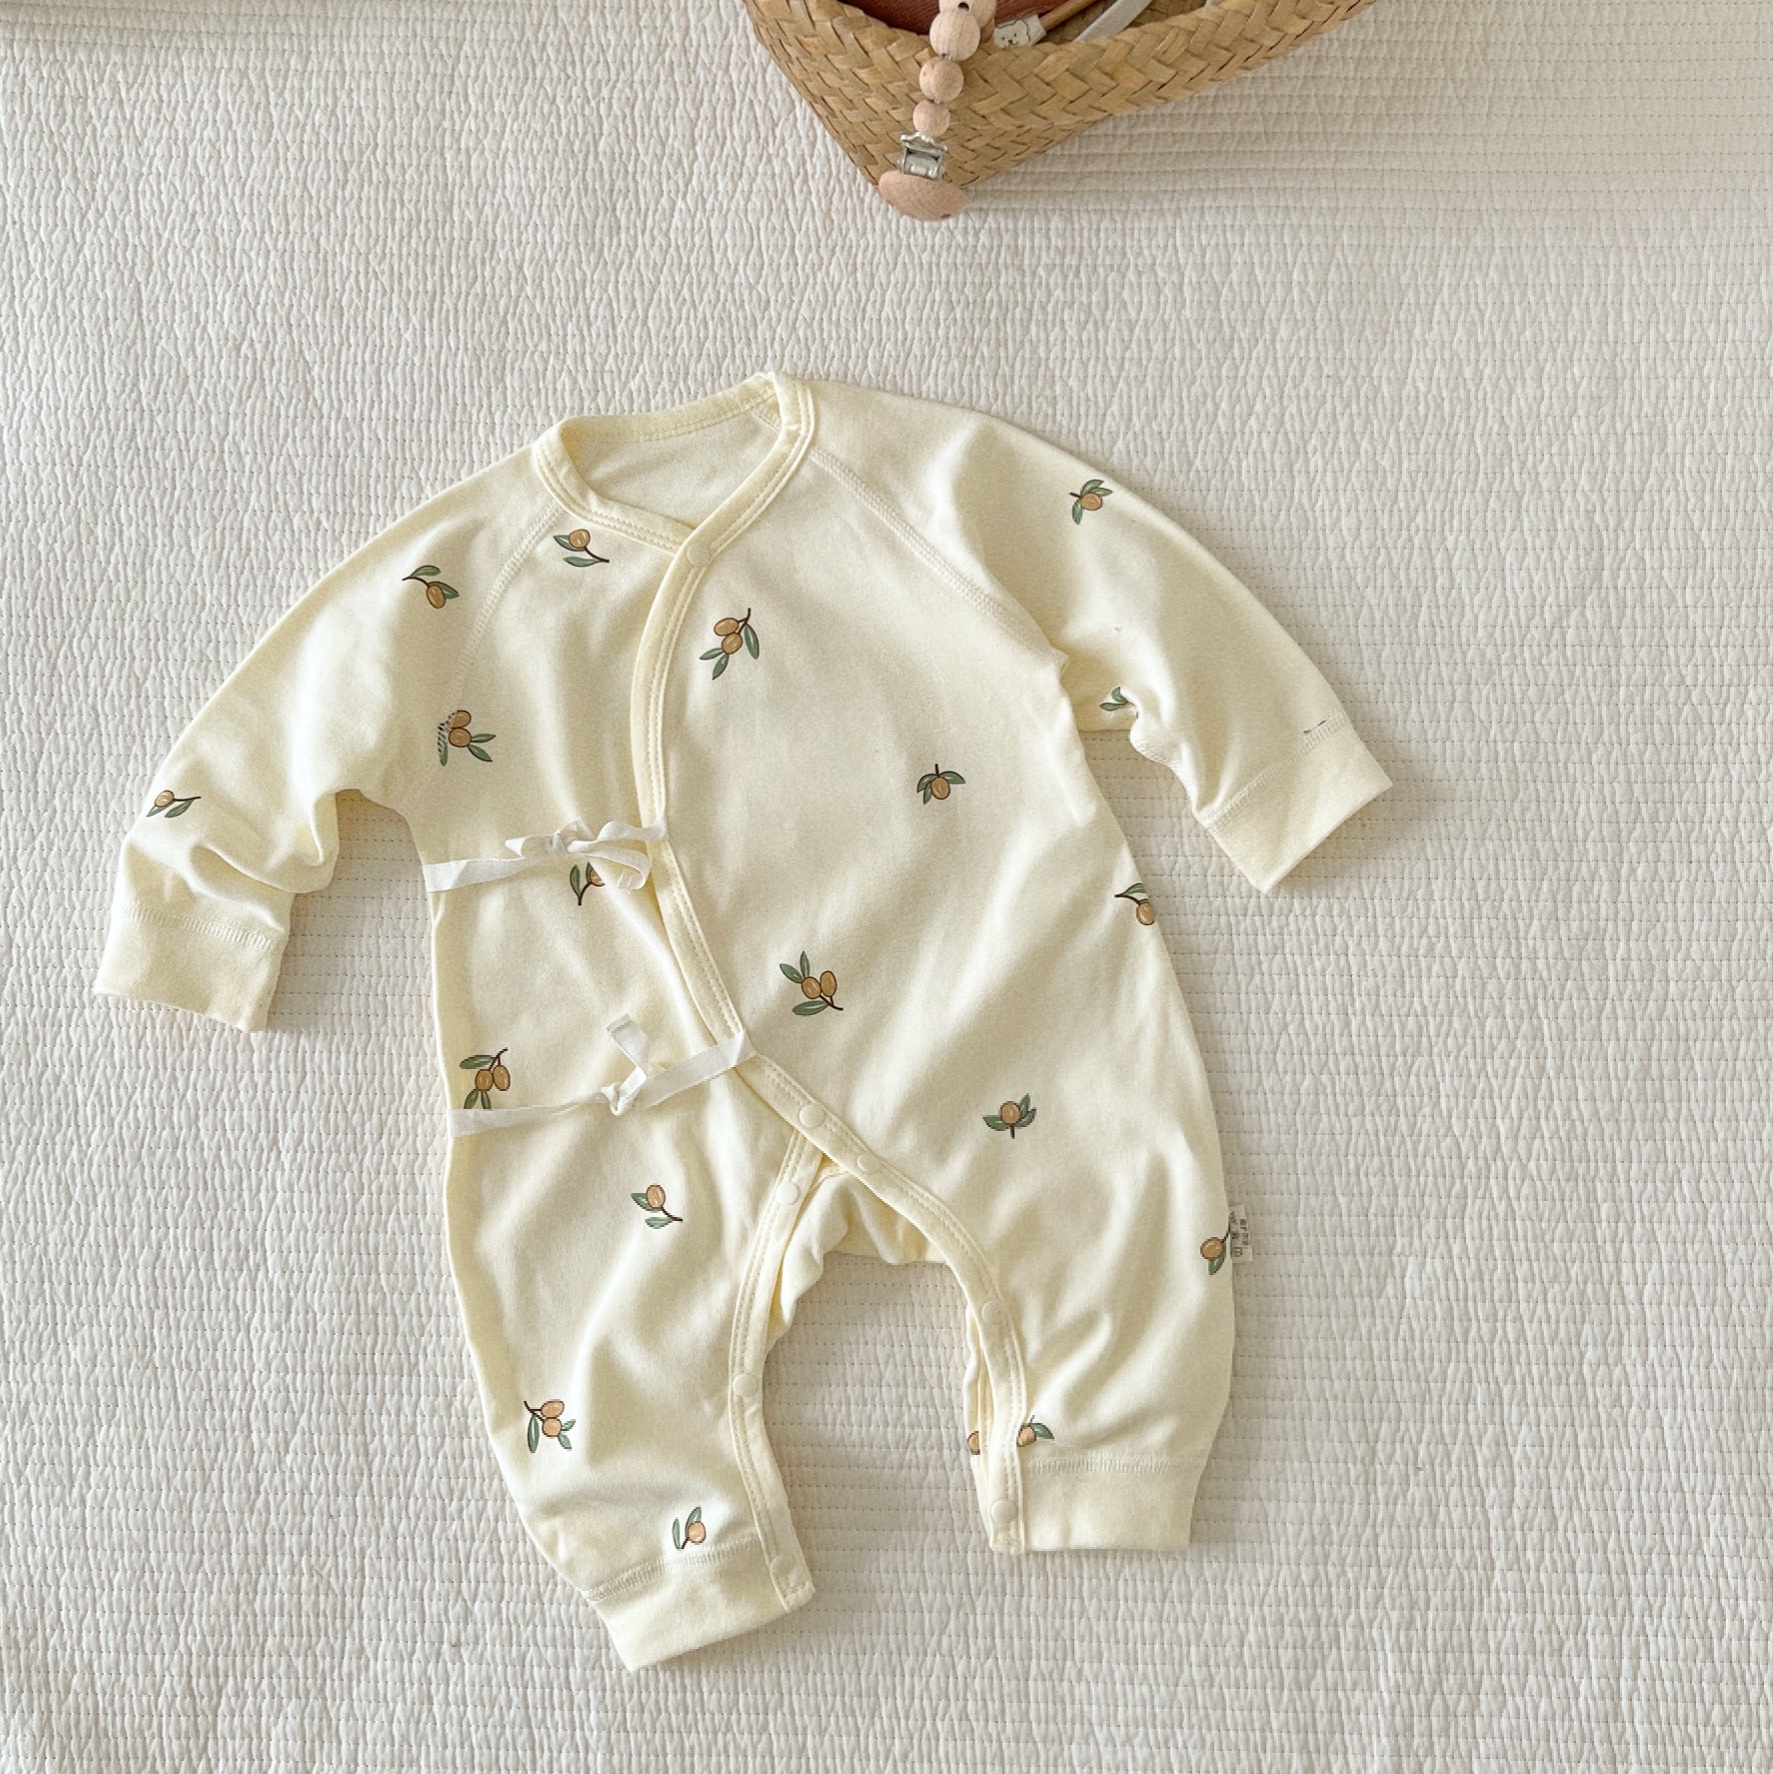 婴儿长袖连体衣冬季打底衣新生儿衣服春秋和尚服初生宝宝纯棉哈衣